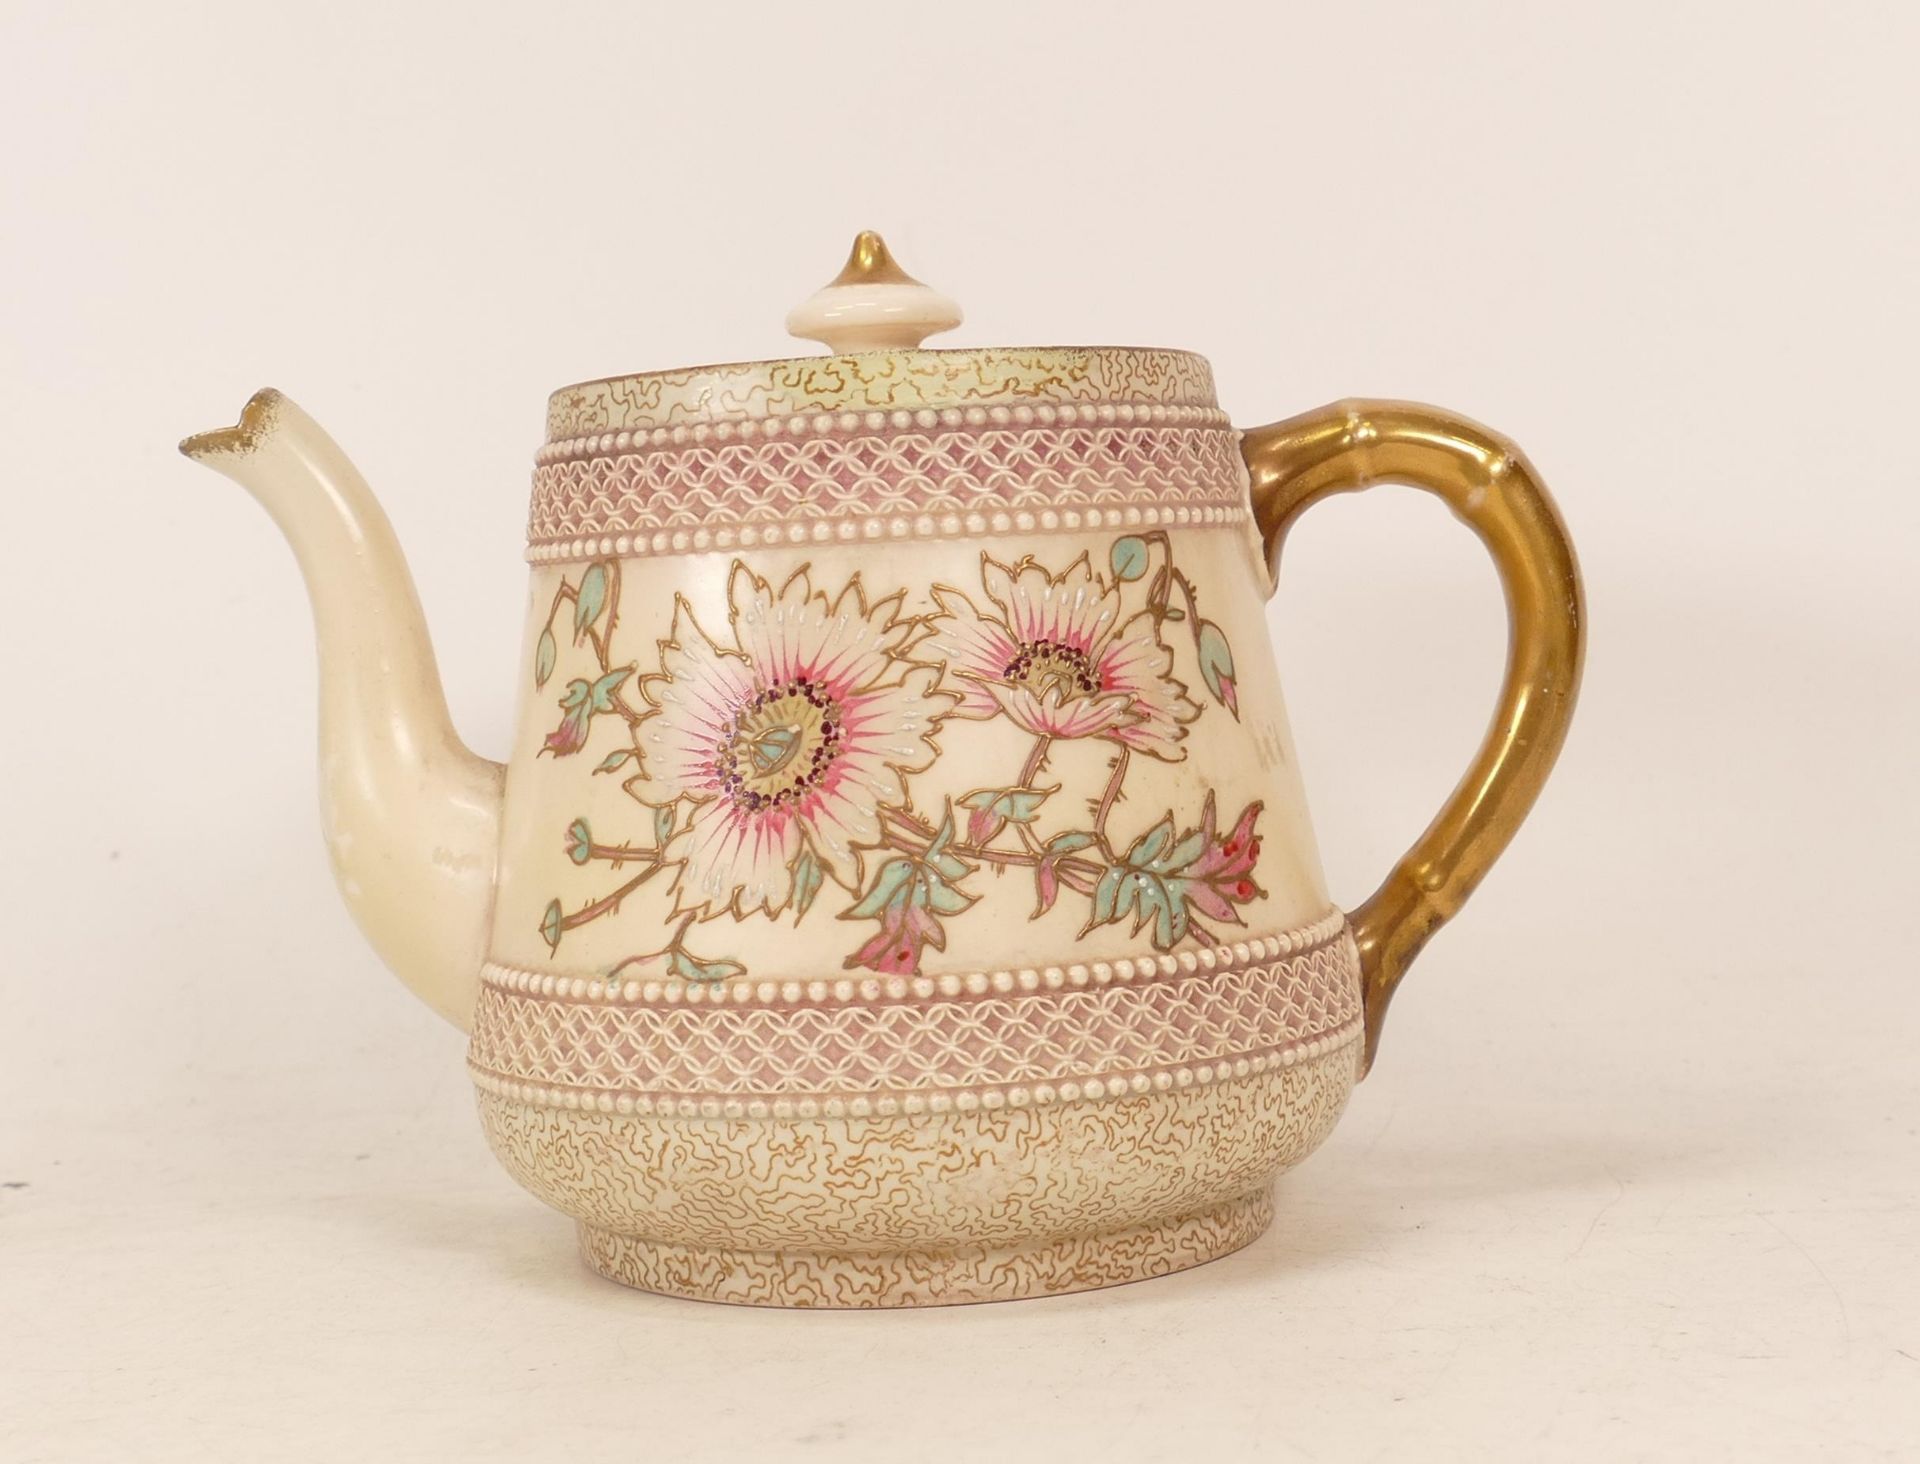 Carlton Ware Old Anemone teapot